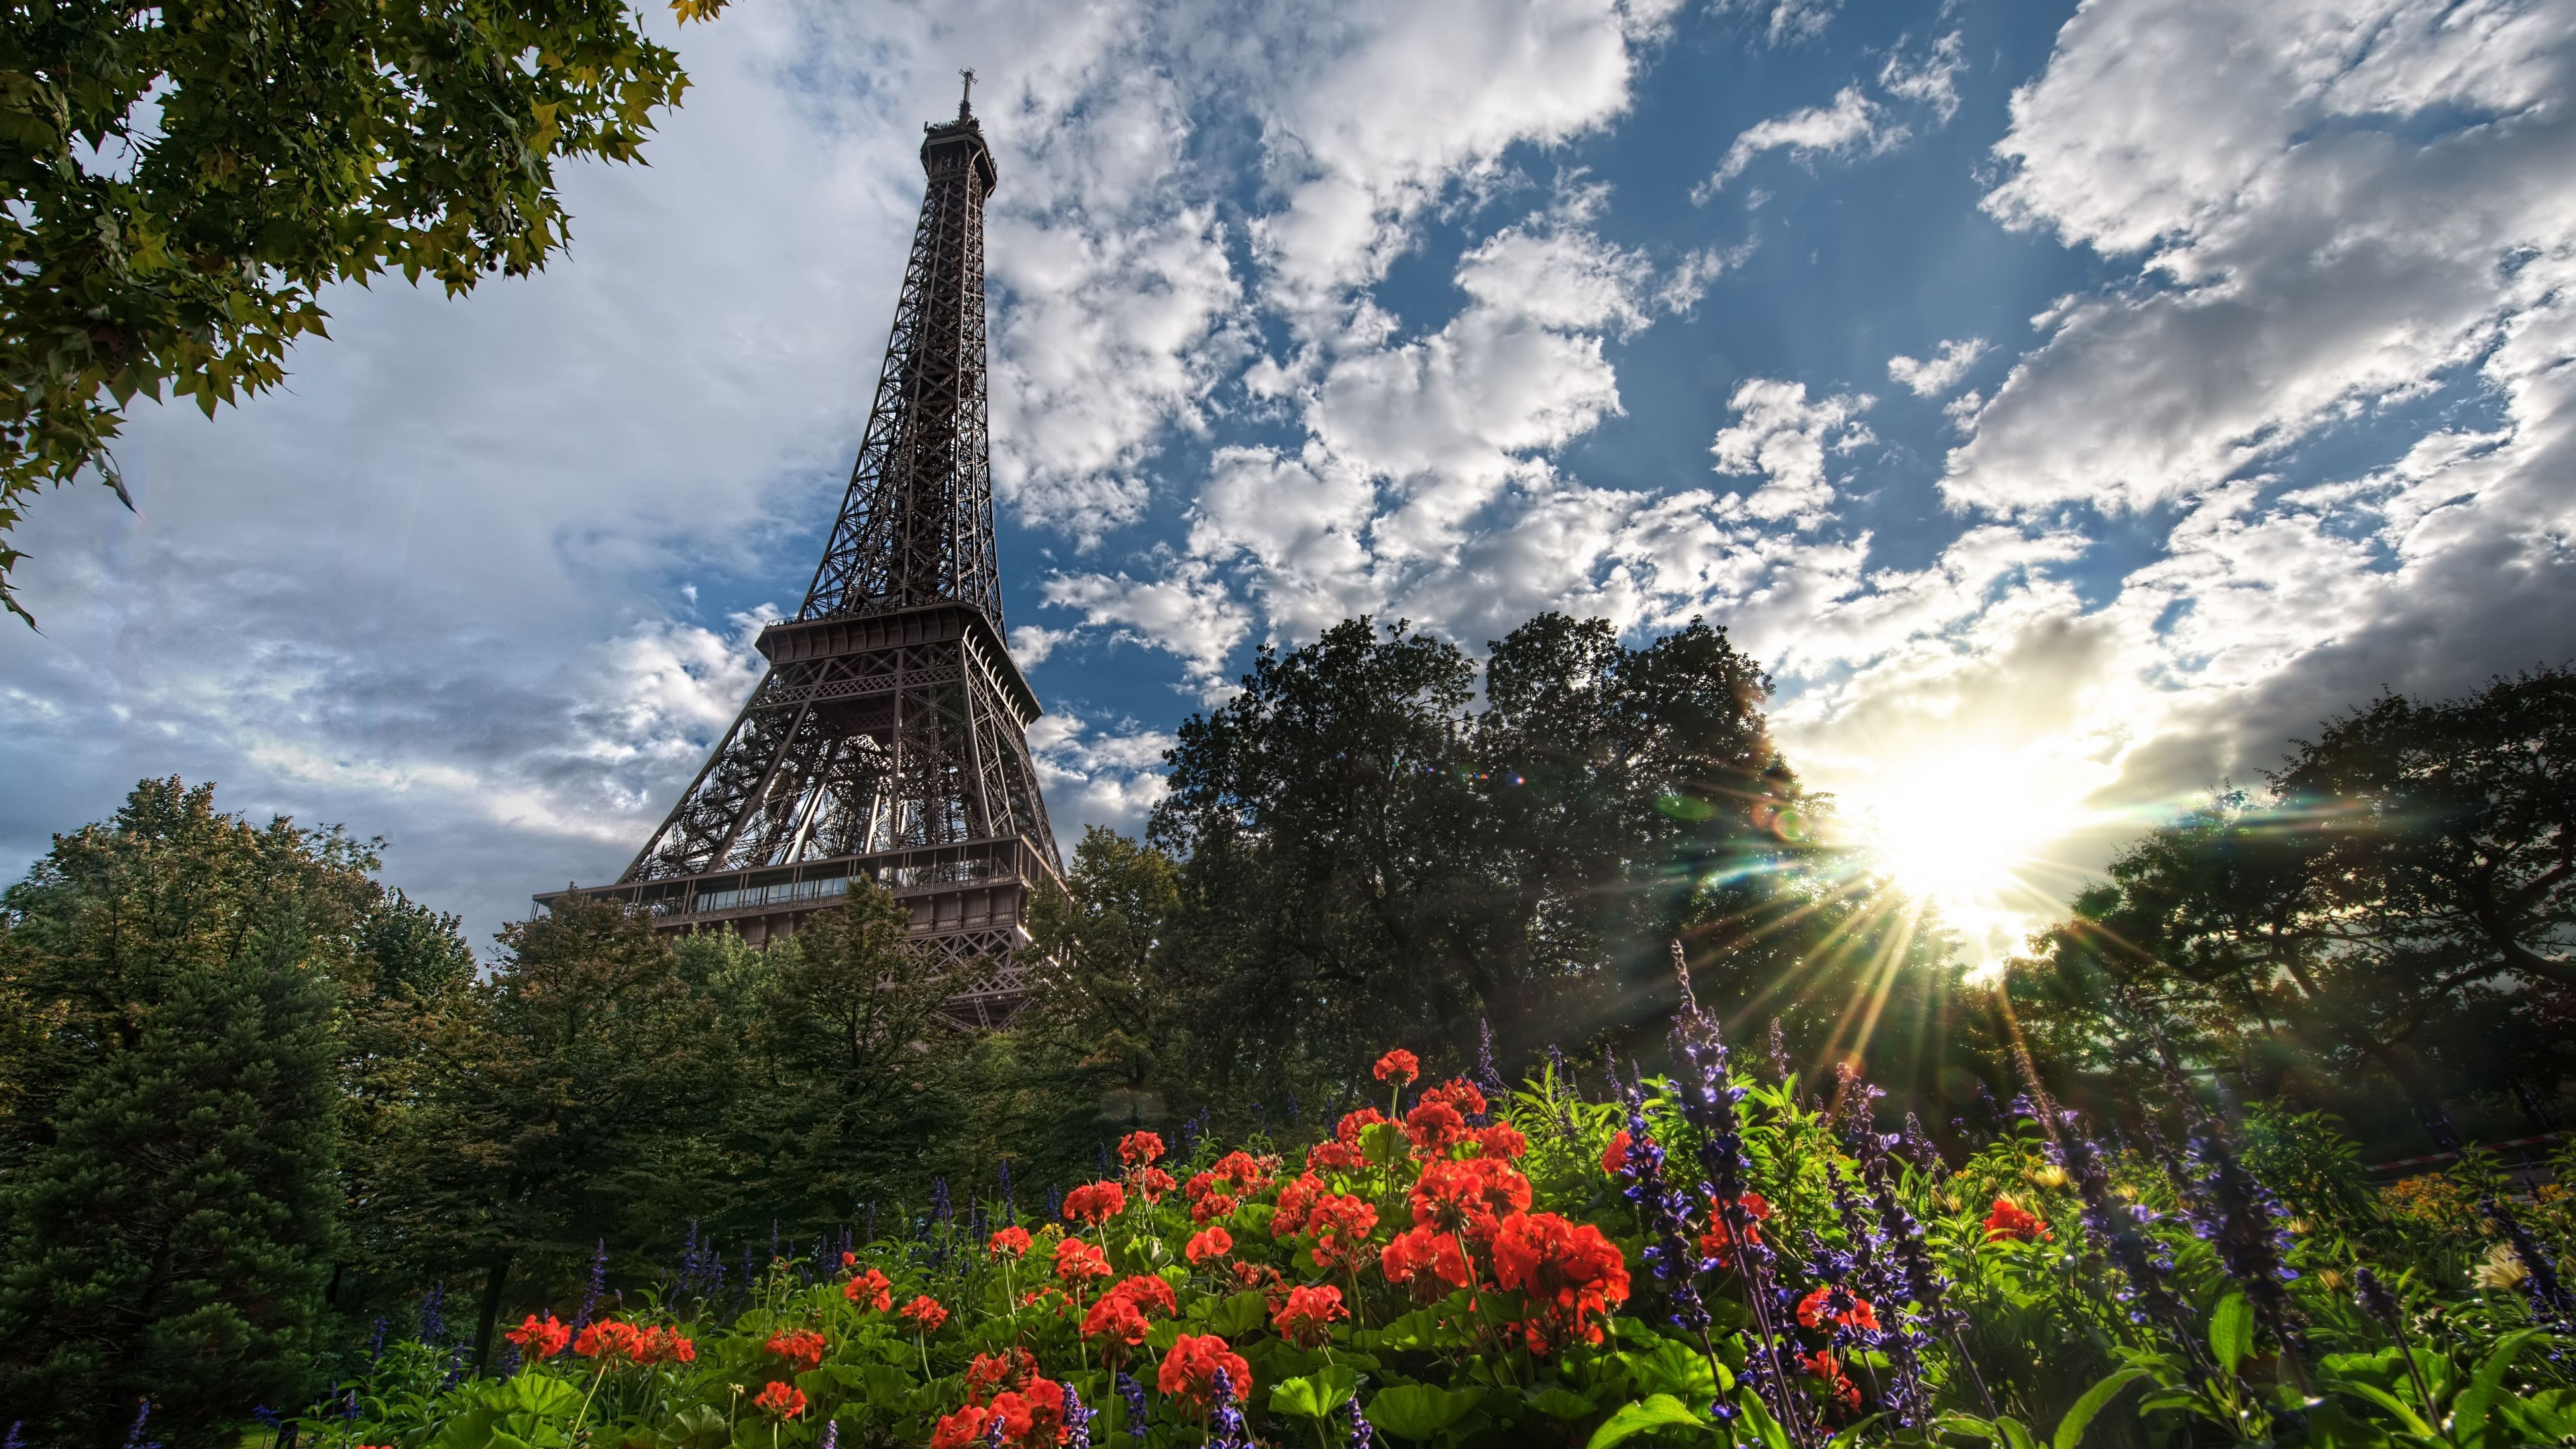 艾菲尔铁塔, 性质, 里程碑, 巴黎的埃菲尔铁塔, 天空 壁纸 3840x2160 允许